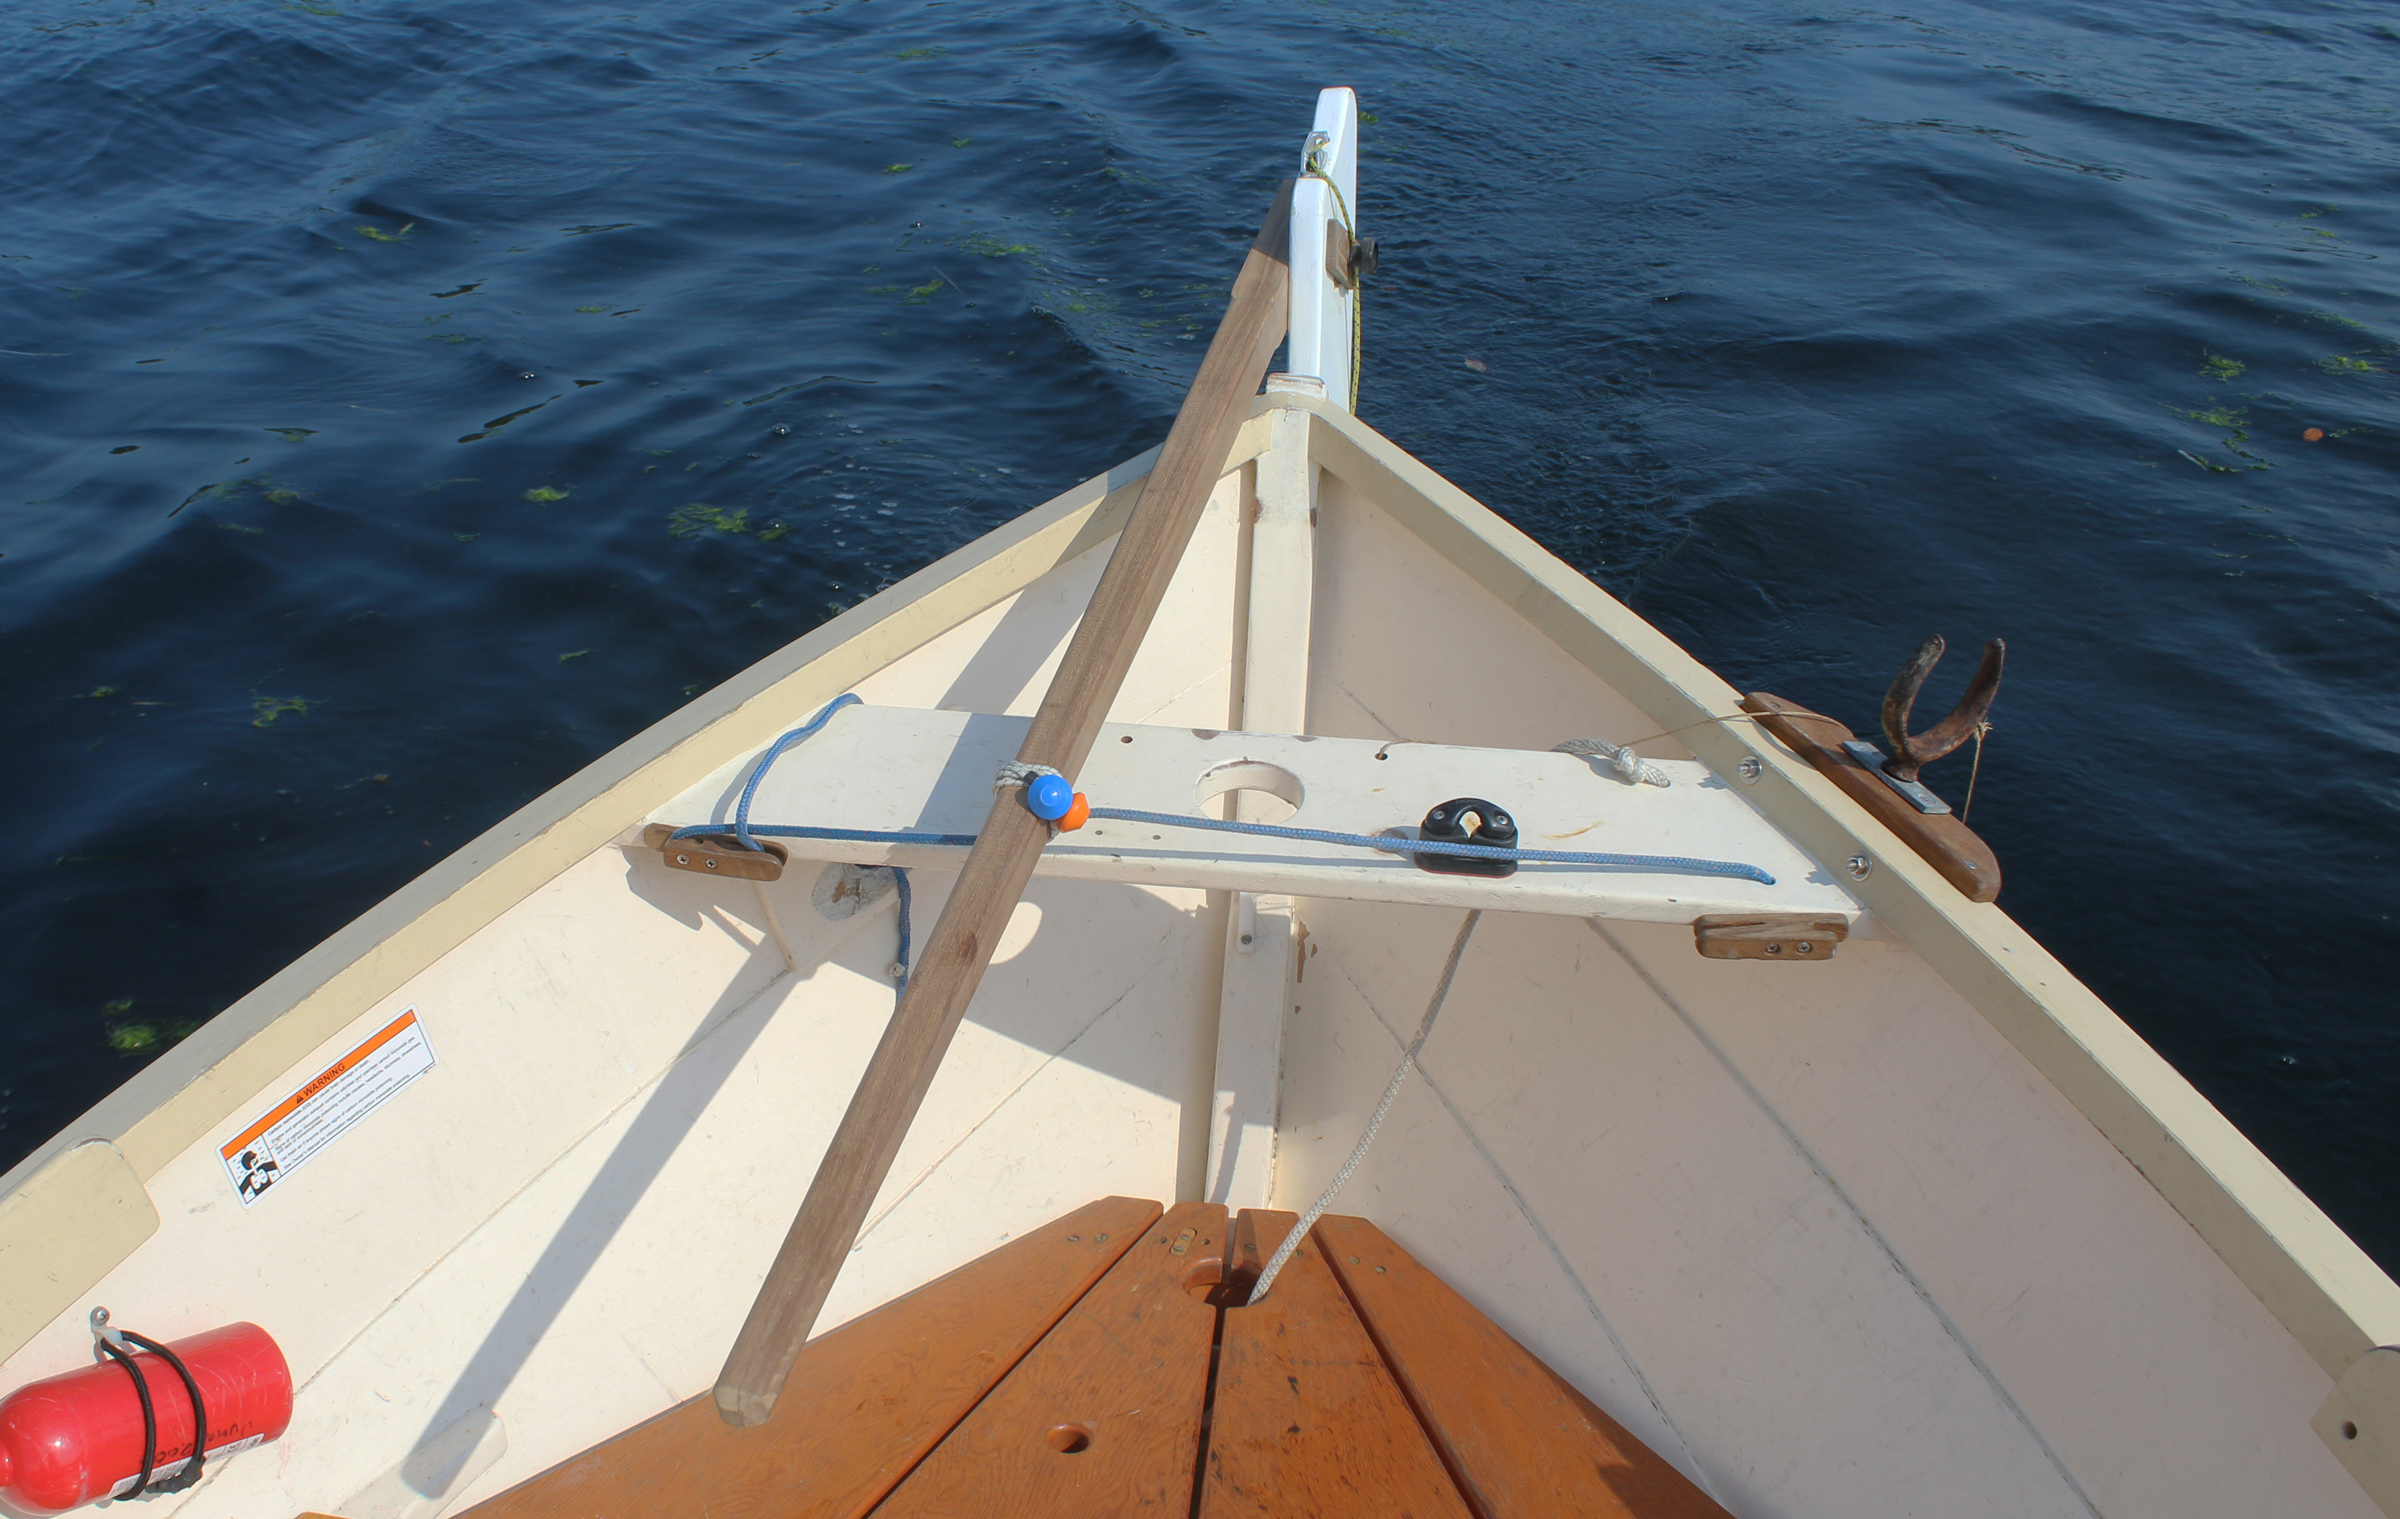 sailboat rudder and tiller